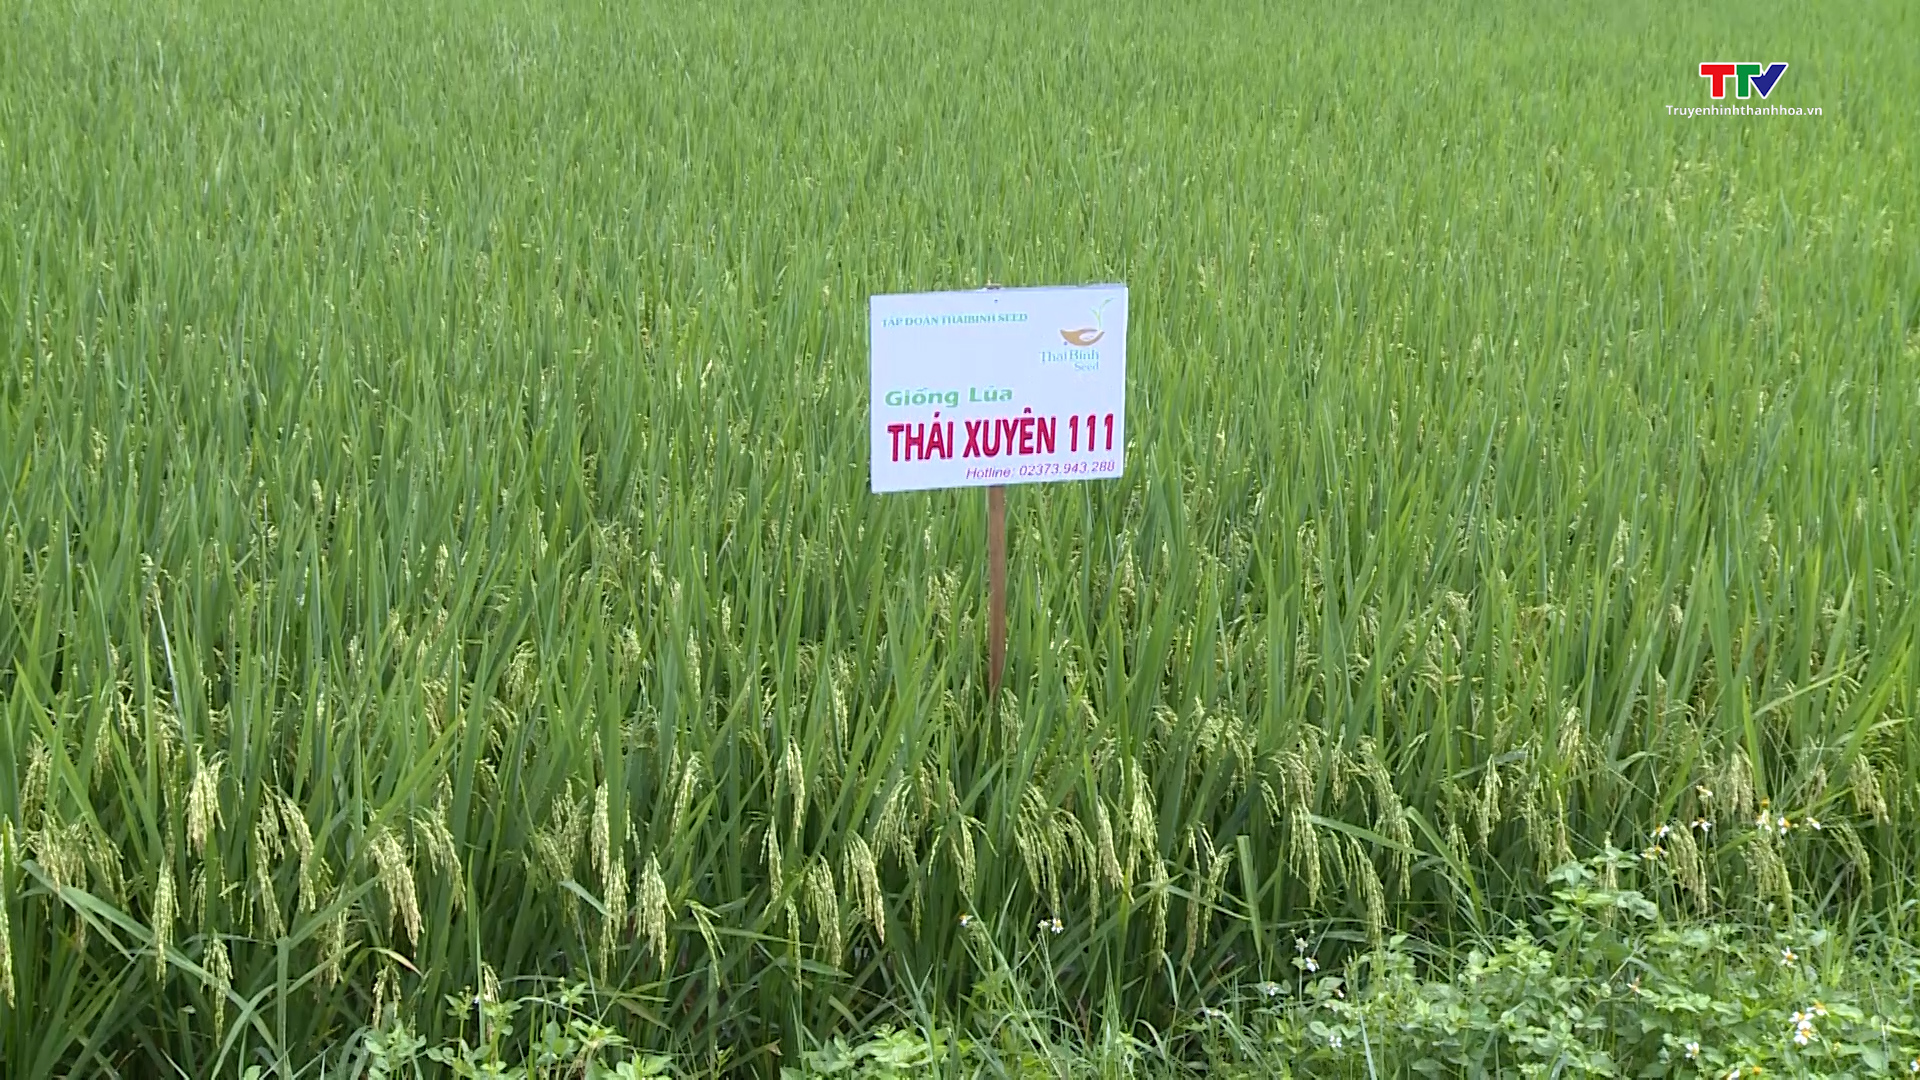 Các giống lúa mới trên đồng đất Thanh Hóa có nhiều ưu điểm, năng suất cao - Ảnh 3.